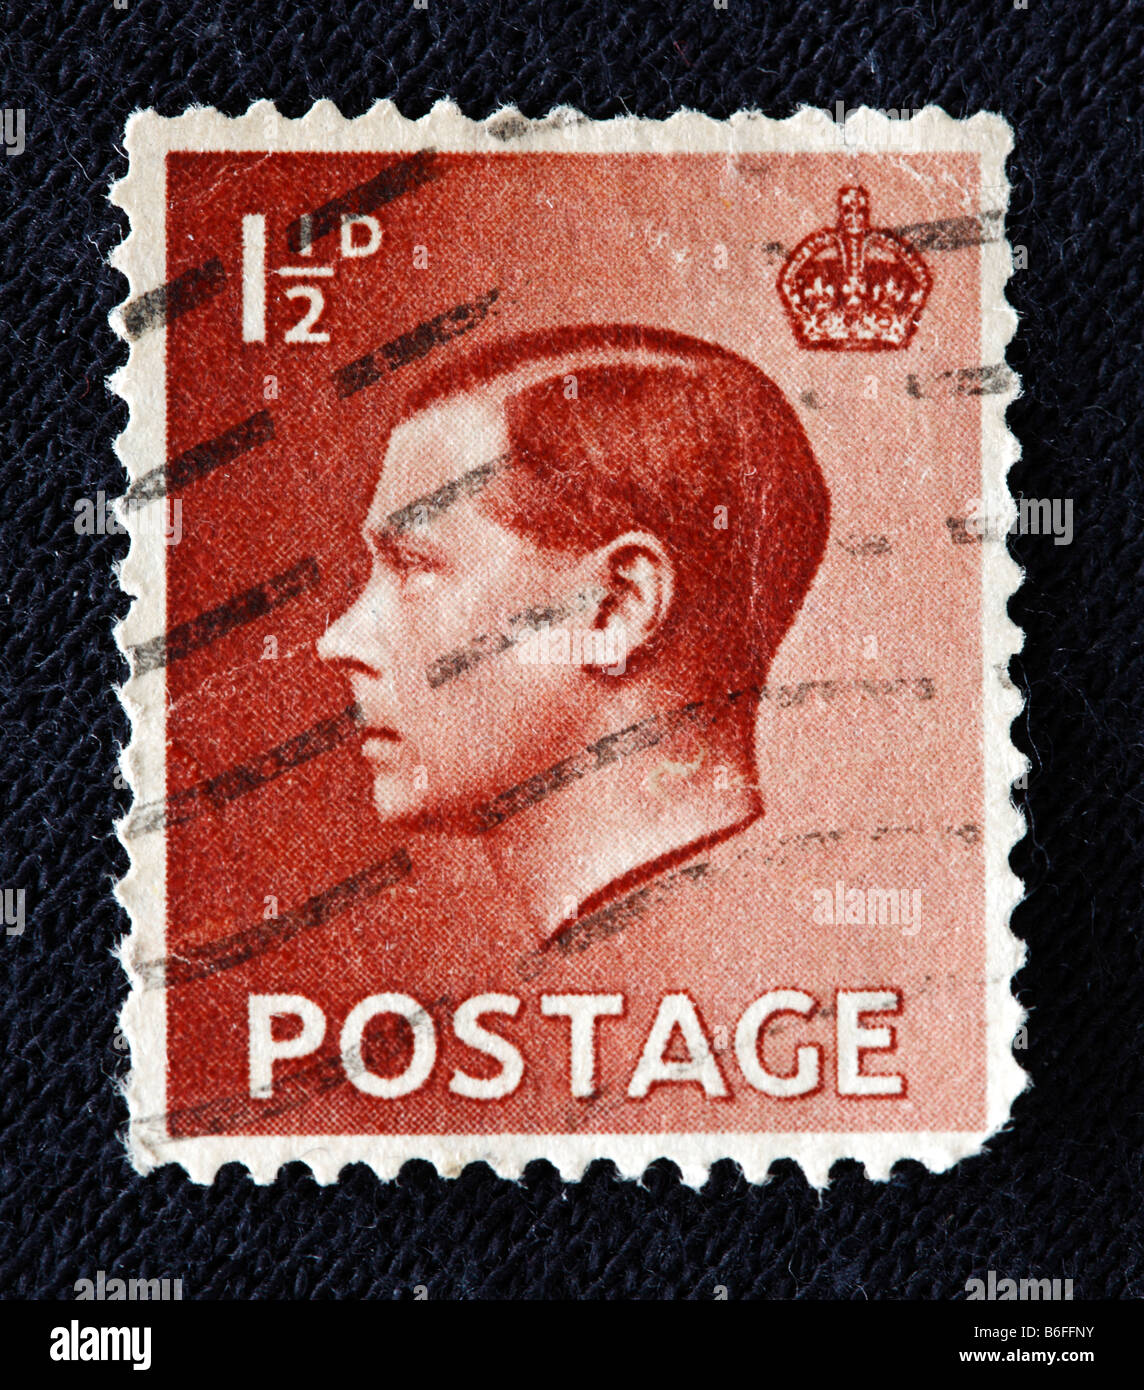 King Edward VIII of the UK (1936), postage stamp, UK Stock Photo